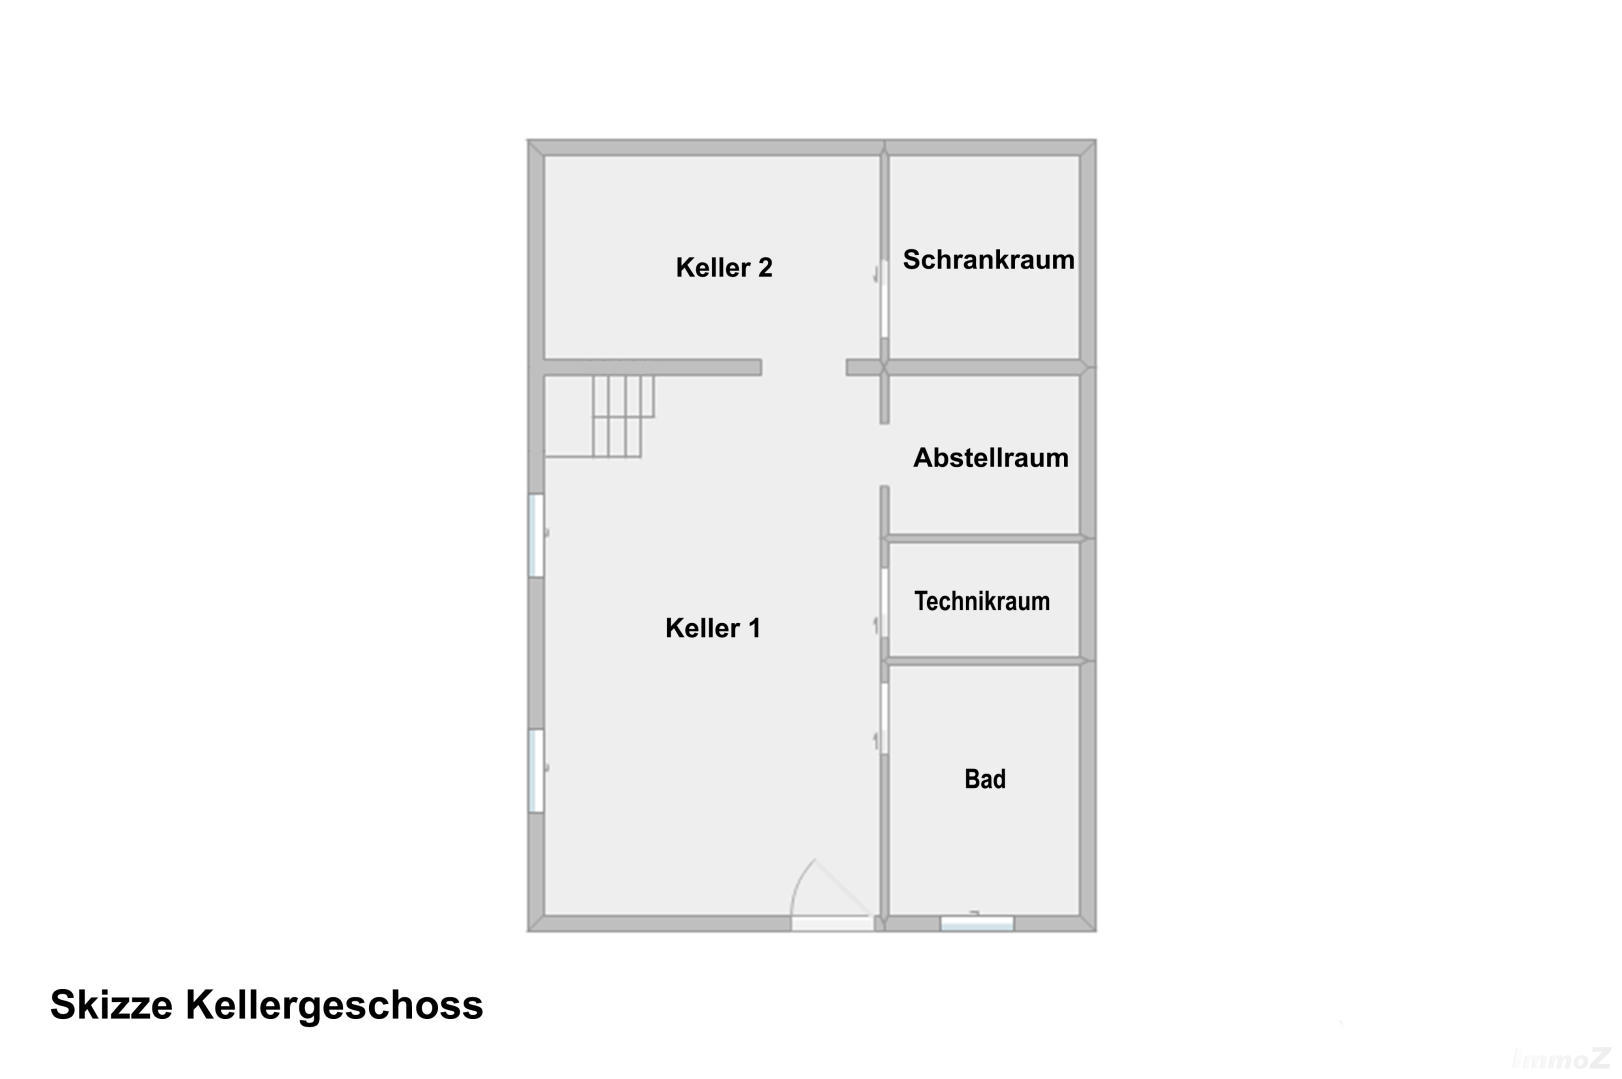 Haus zu kaufen: Kienersee ll, 2325 Velm - Grundriss KG